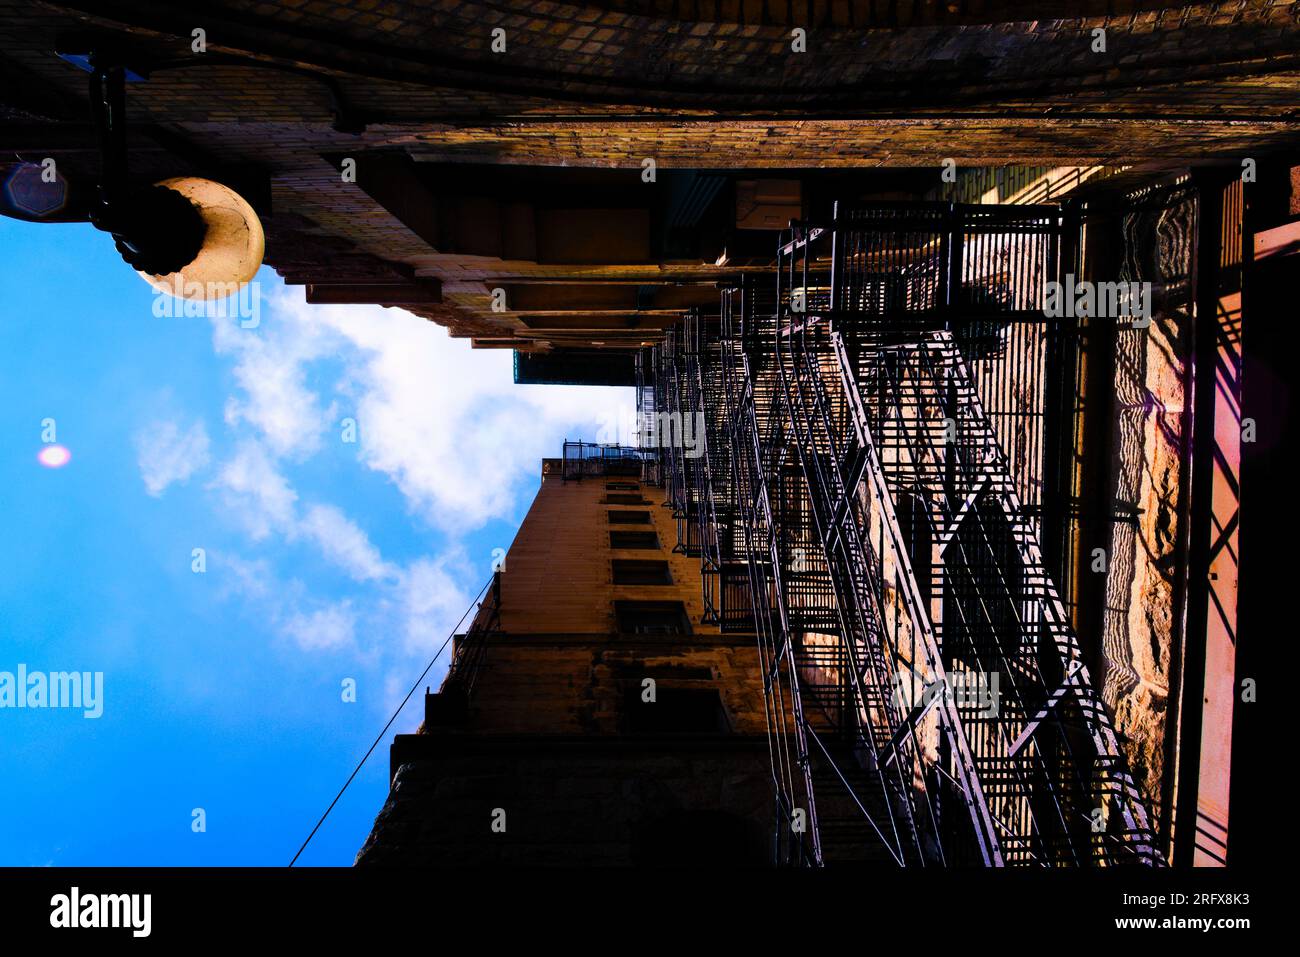 Vista spettacolare di un'uscita antincendio contro un edificio in mattoni con un cielo blu profondo sopra la testa. Foto di alta qualità Foto Stock